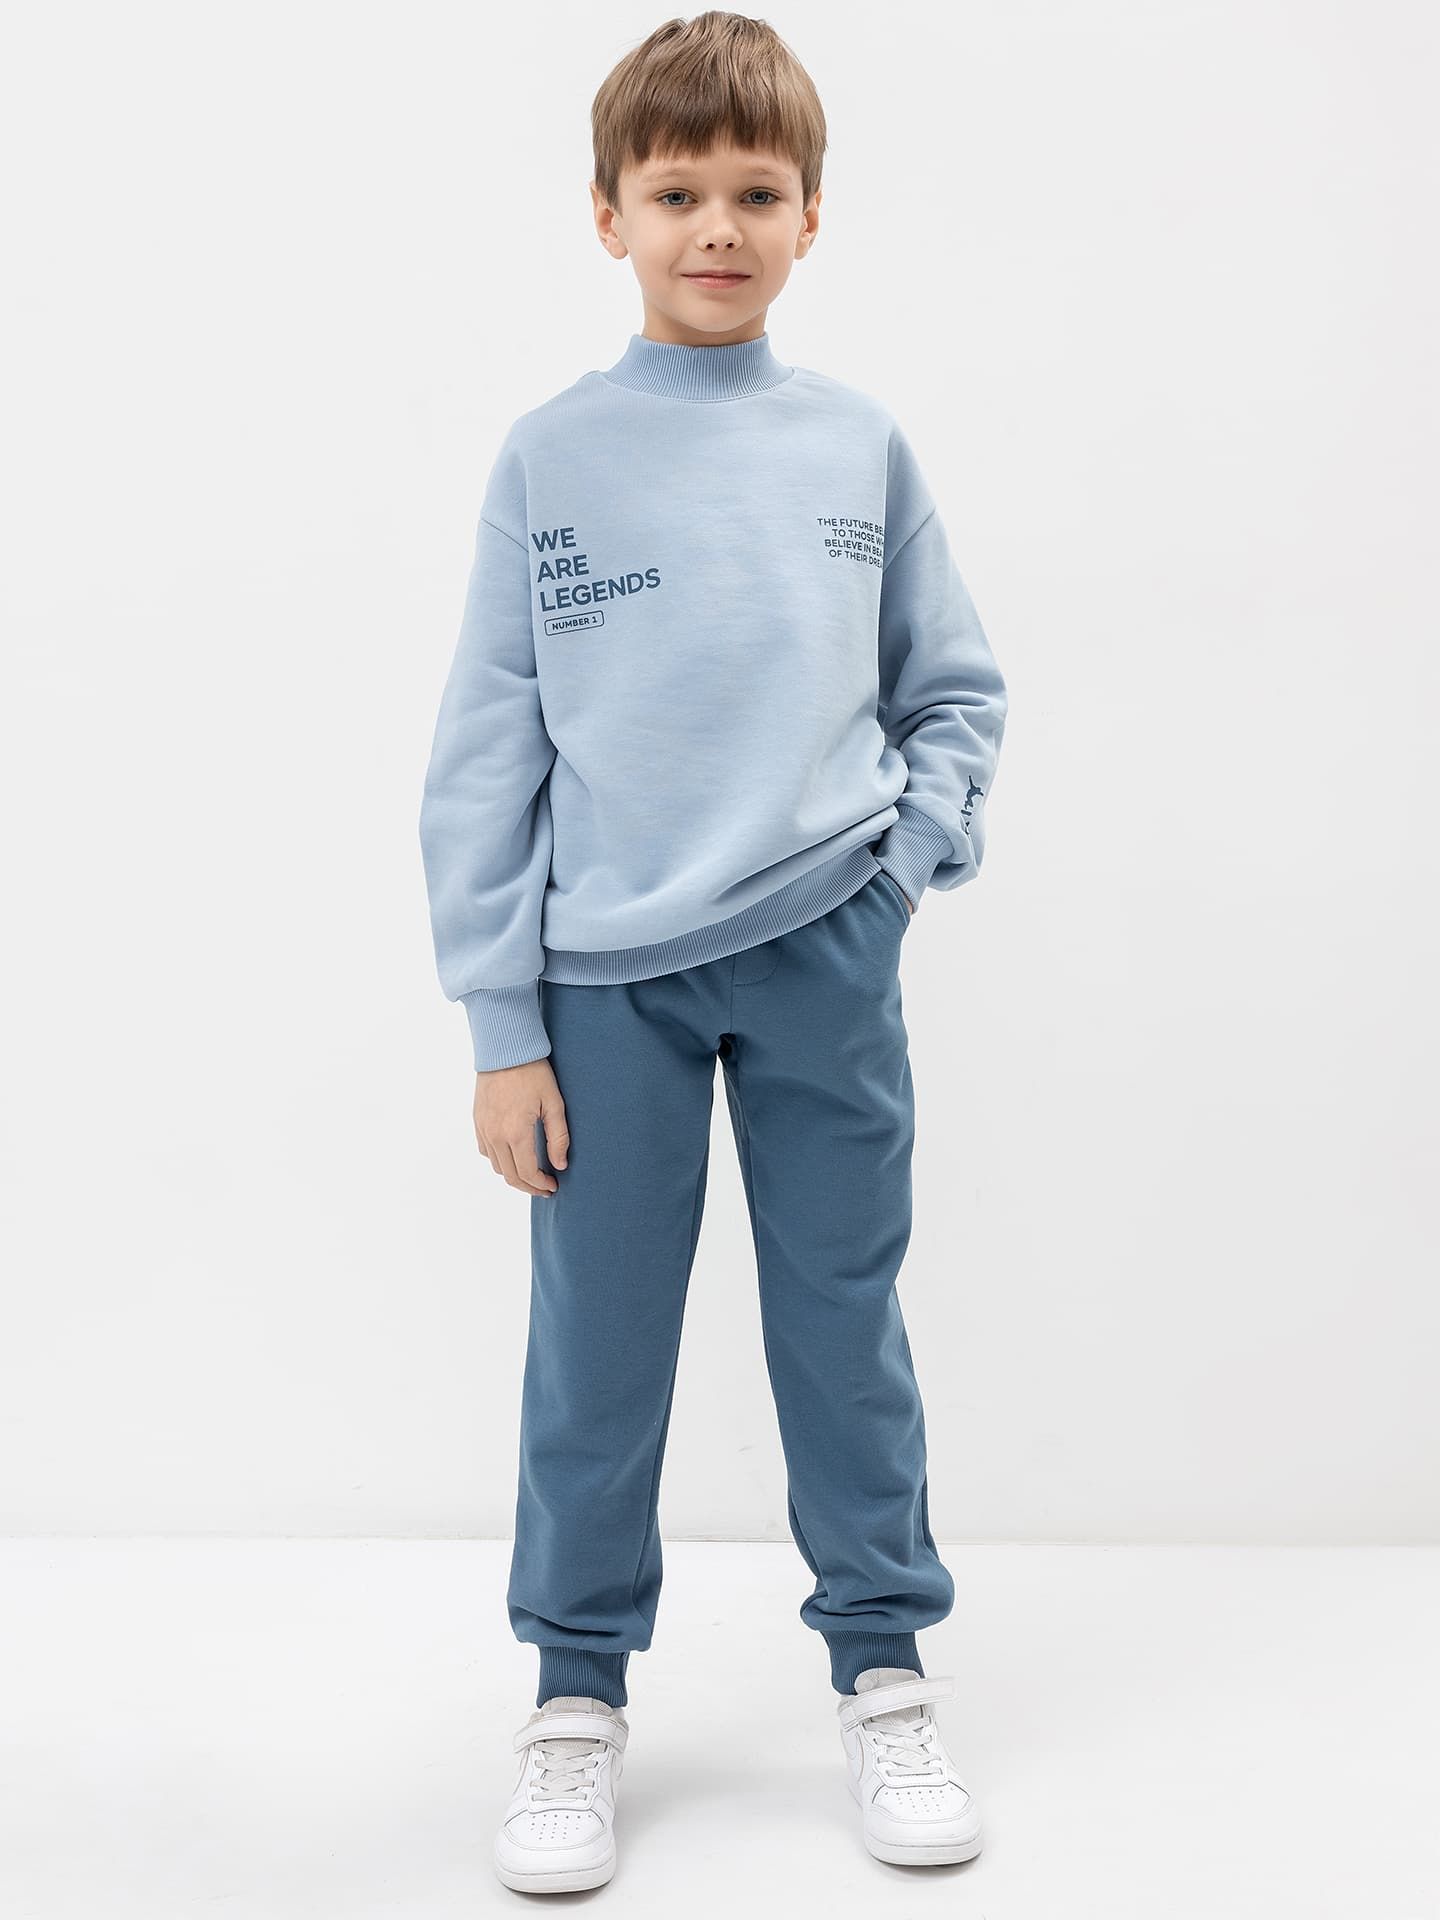 Комплект для мальчика (джемпер, брюки) в серо-голубом цвете с печатью